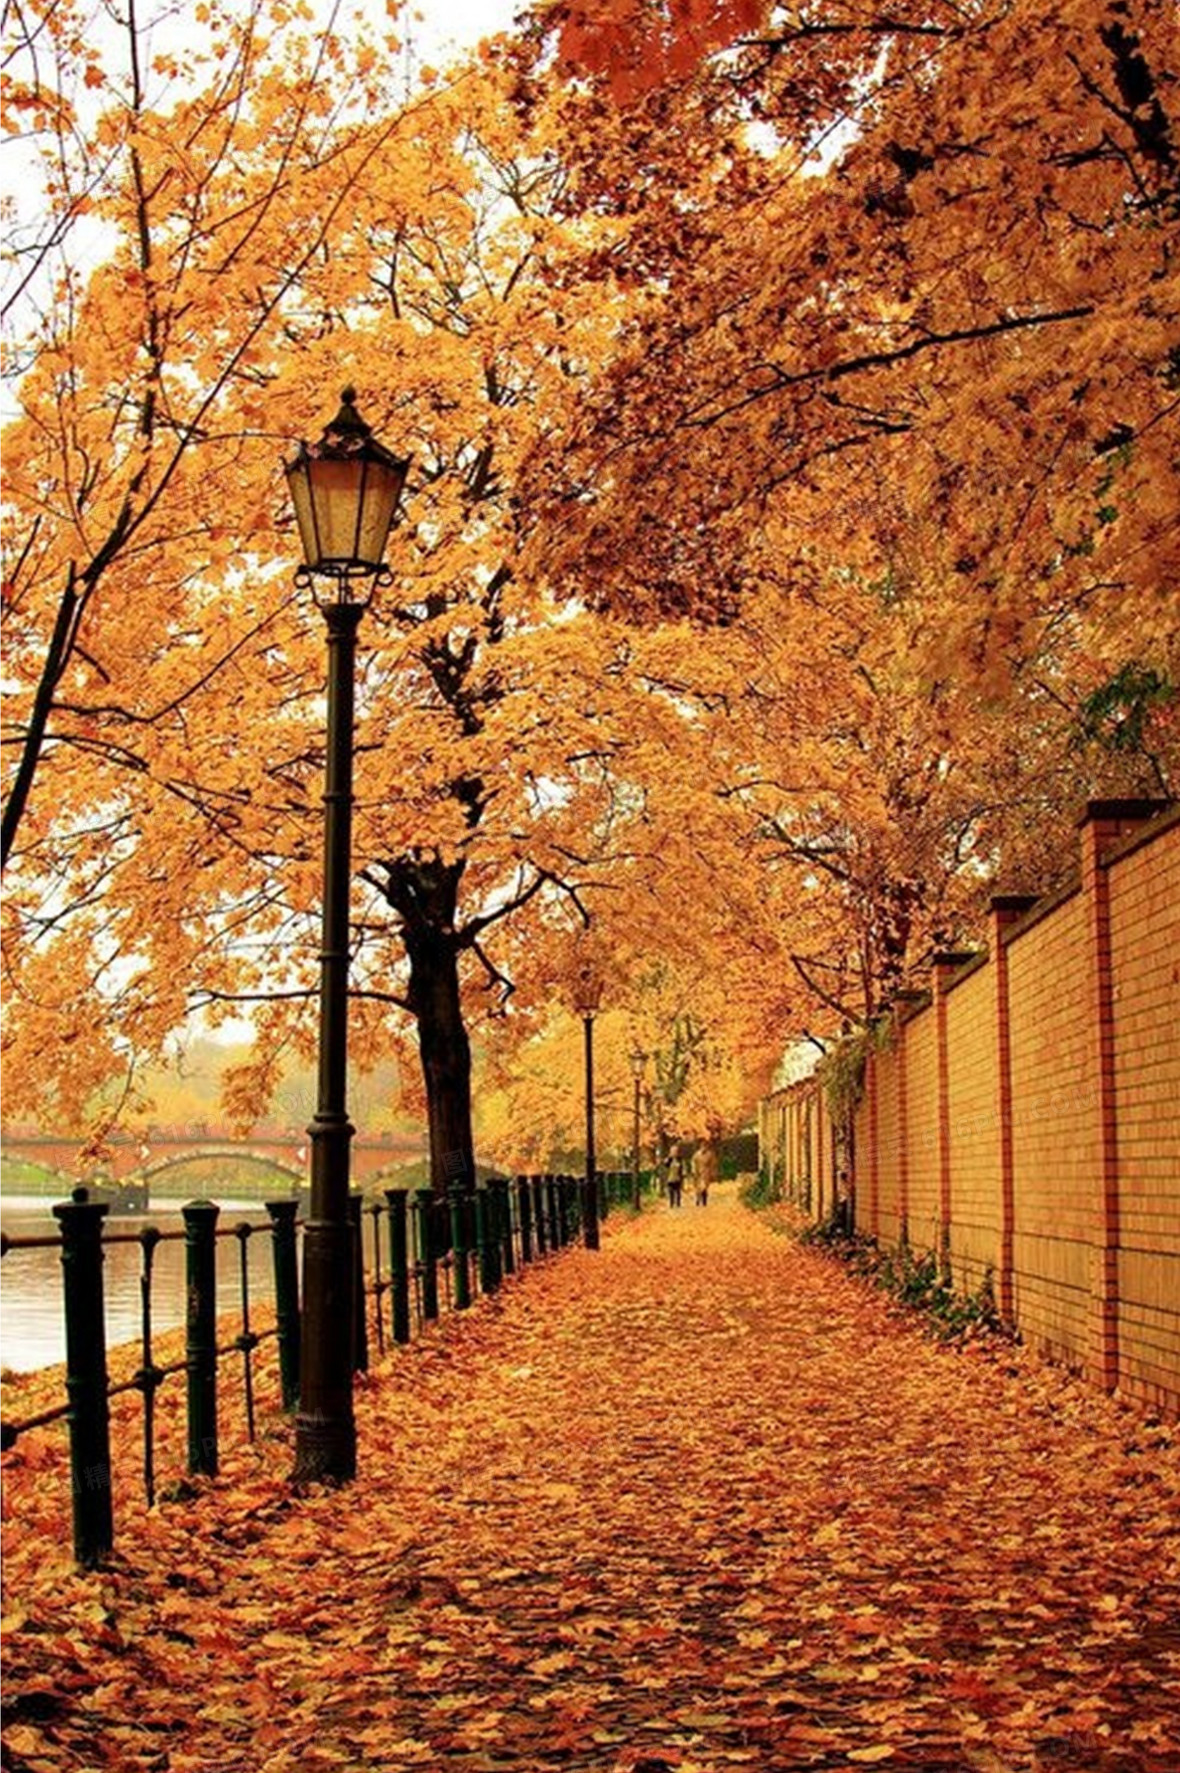 关键词:              秋天 街道 黄色 落叶 背景图 JPG 风景